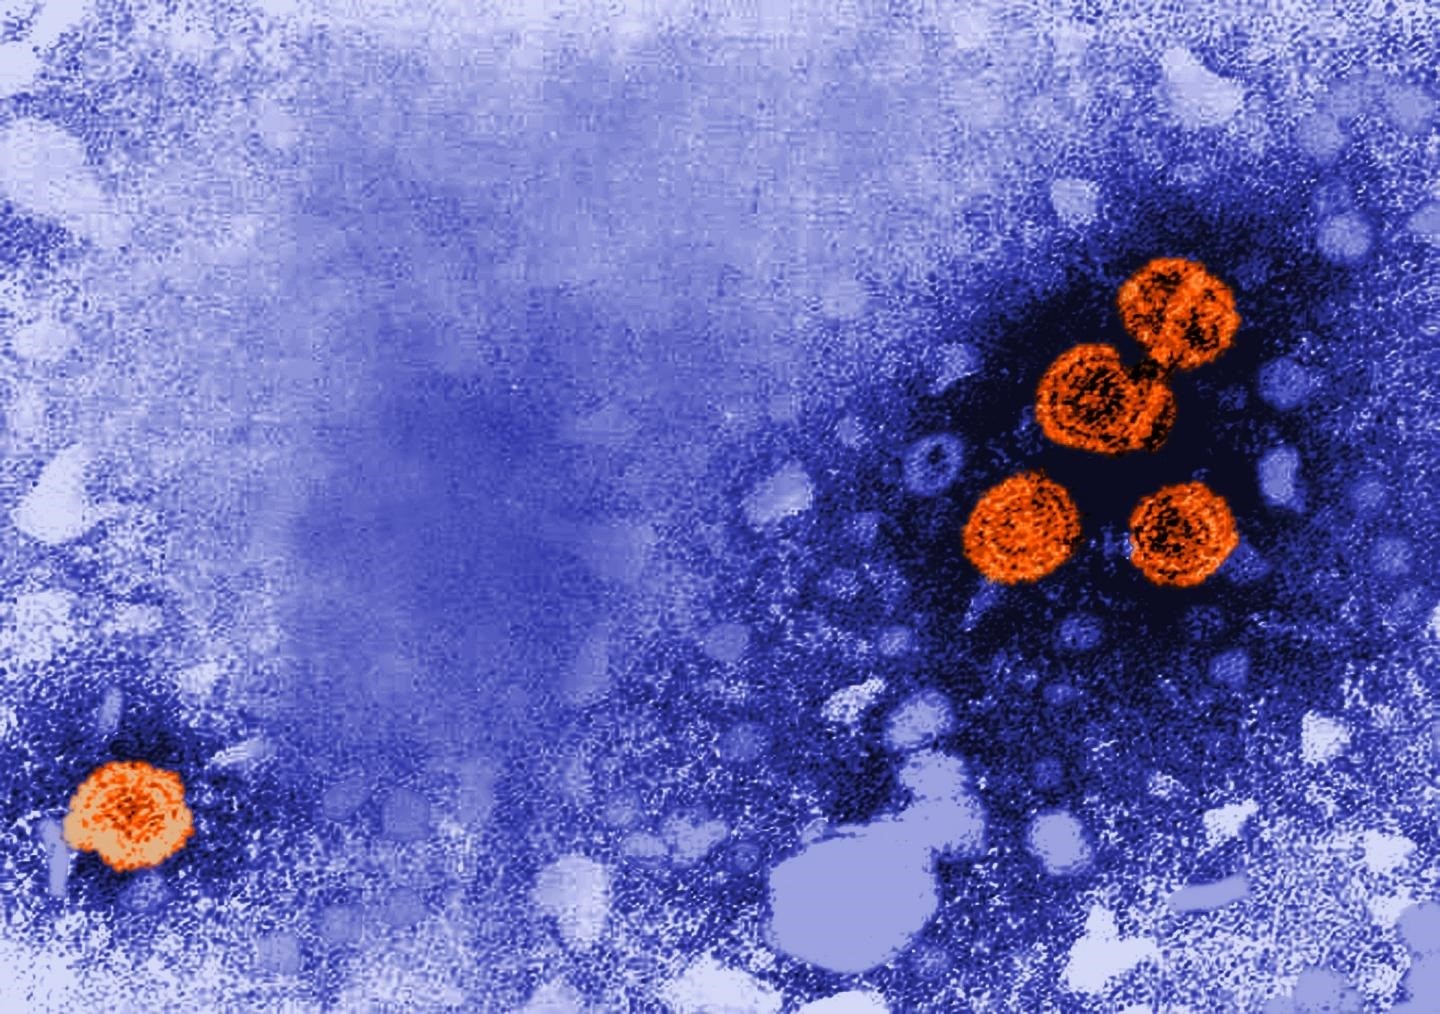 01/01/1970 Imagen de microscopía electrónica de transmisión coloreada digitalmente revela la presencia de viriones de la hepatitis B (de color naranja).
SALUD
CDC/DR. ERSKINE PALMER
